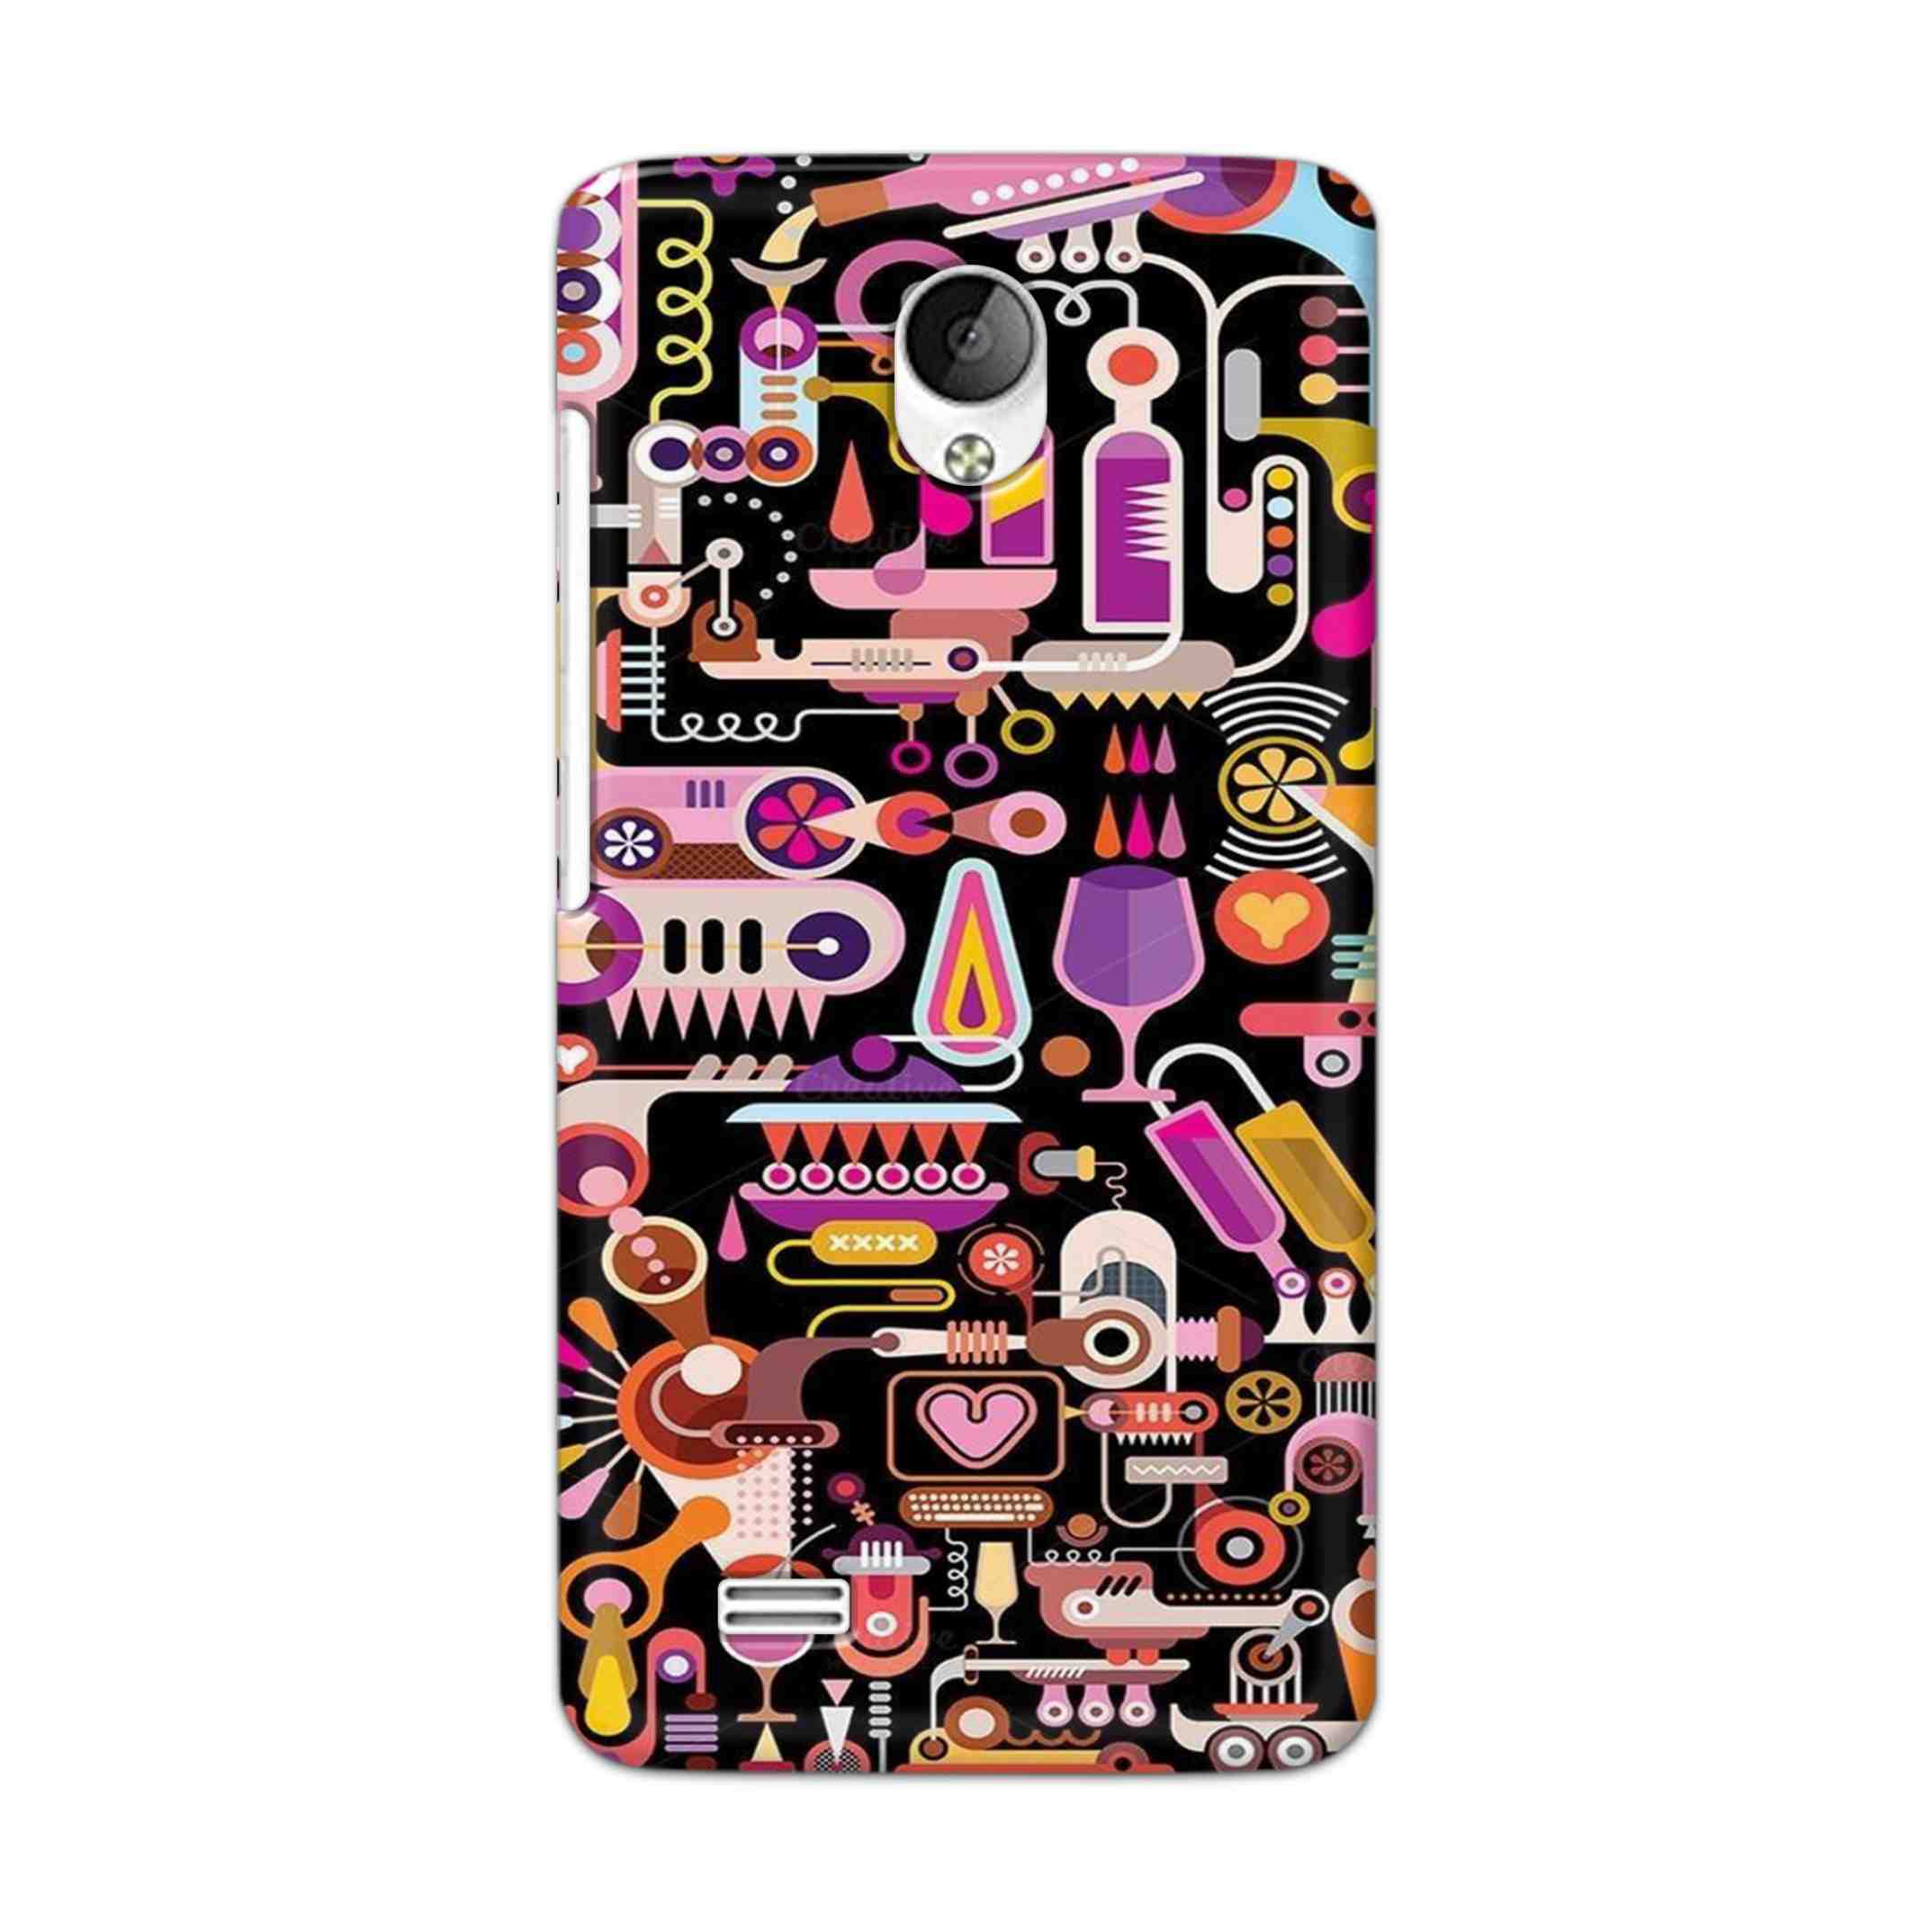 Buy Lab Art Hard Back Mobile Phone Case Cover For Vivo Y21 / Vivo Y21L Online